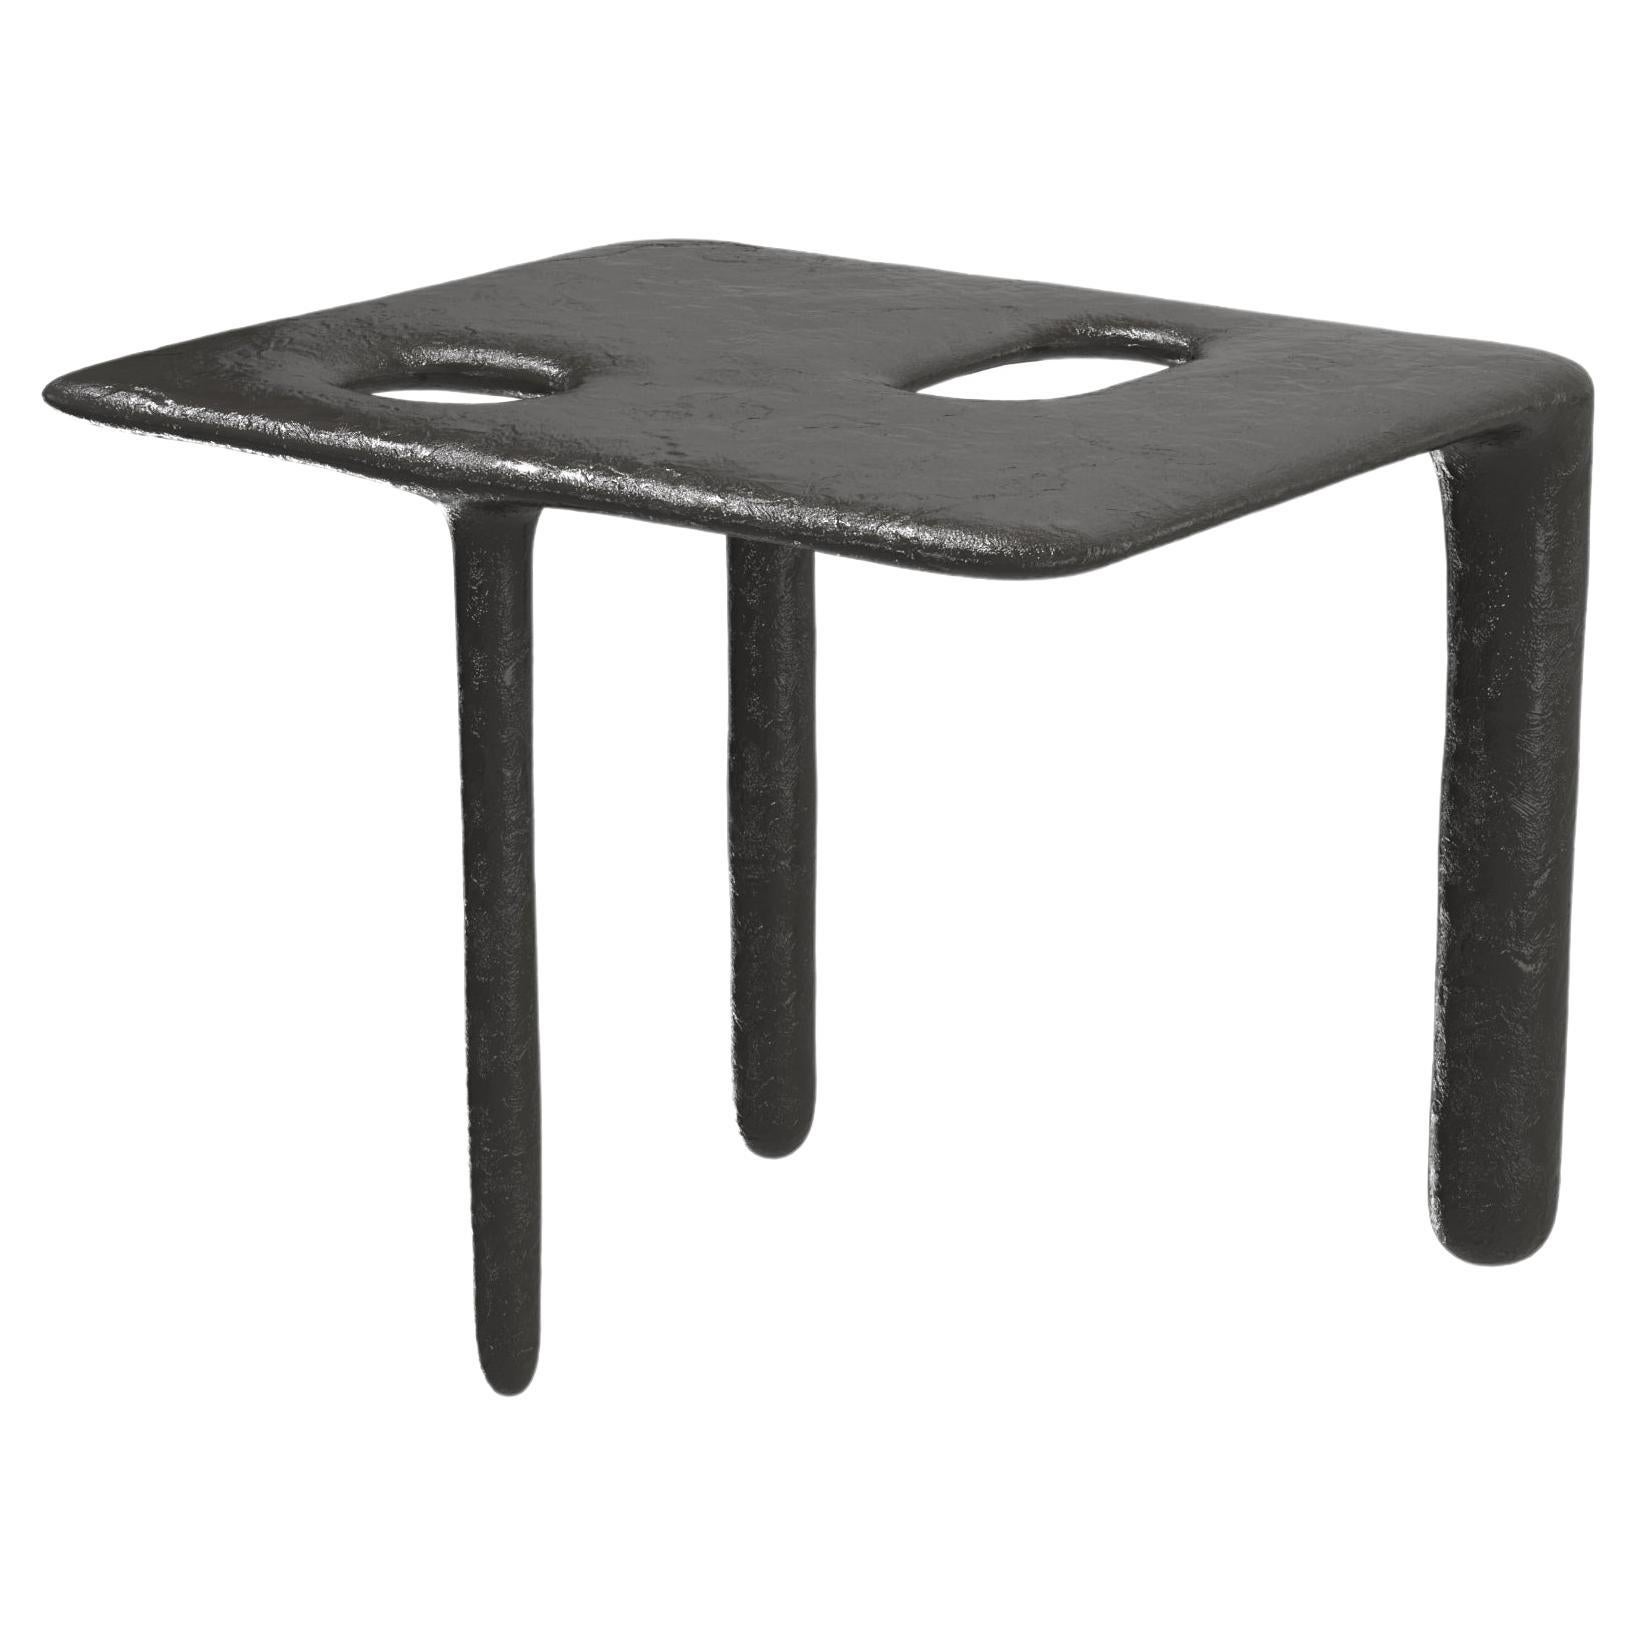 Limited Edition Bronze Table, Oasi V1 by Edizione Limitata For Sale